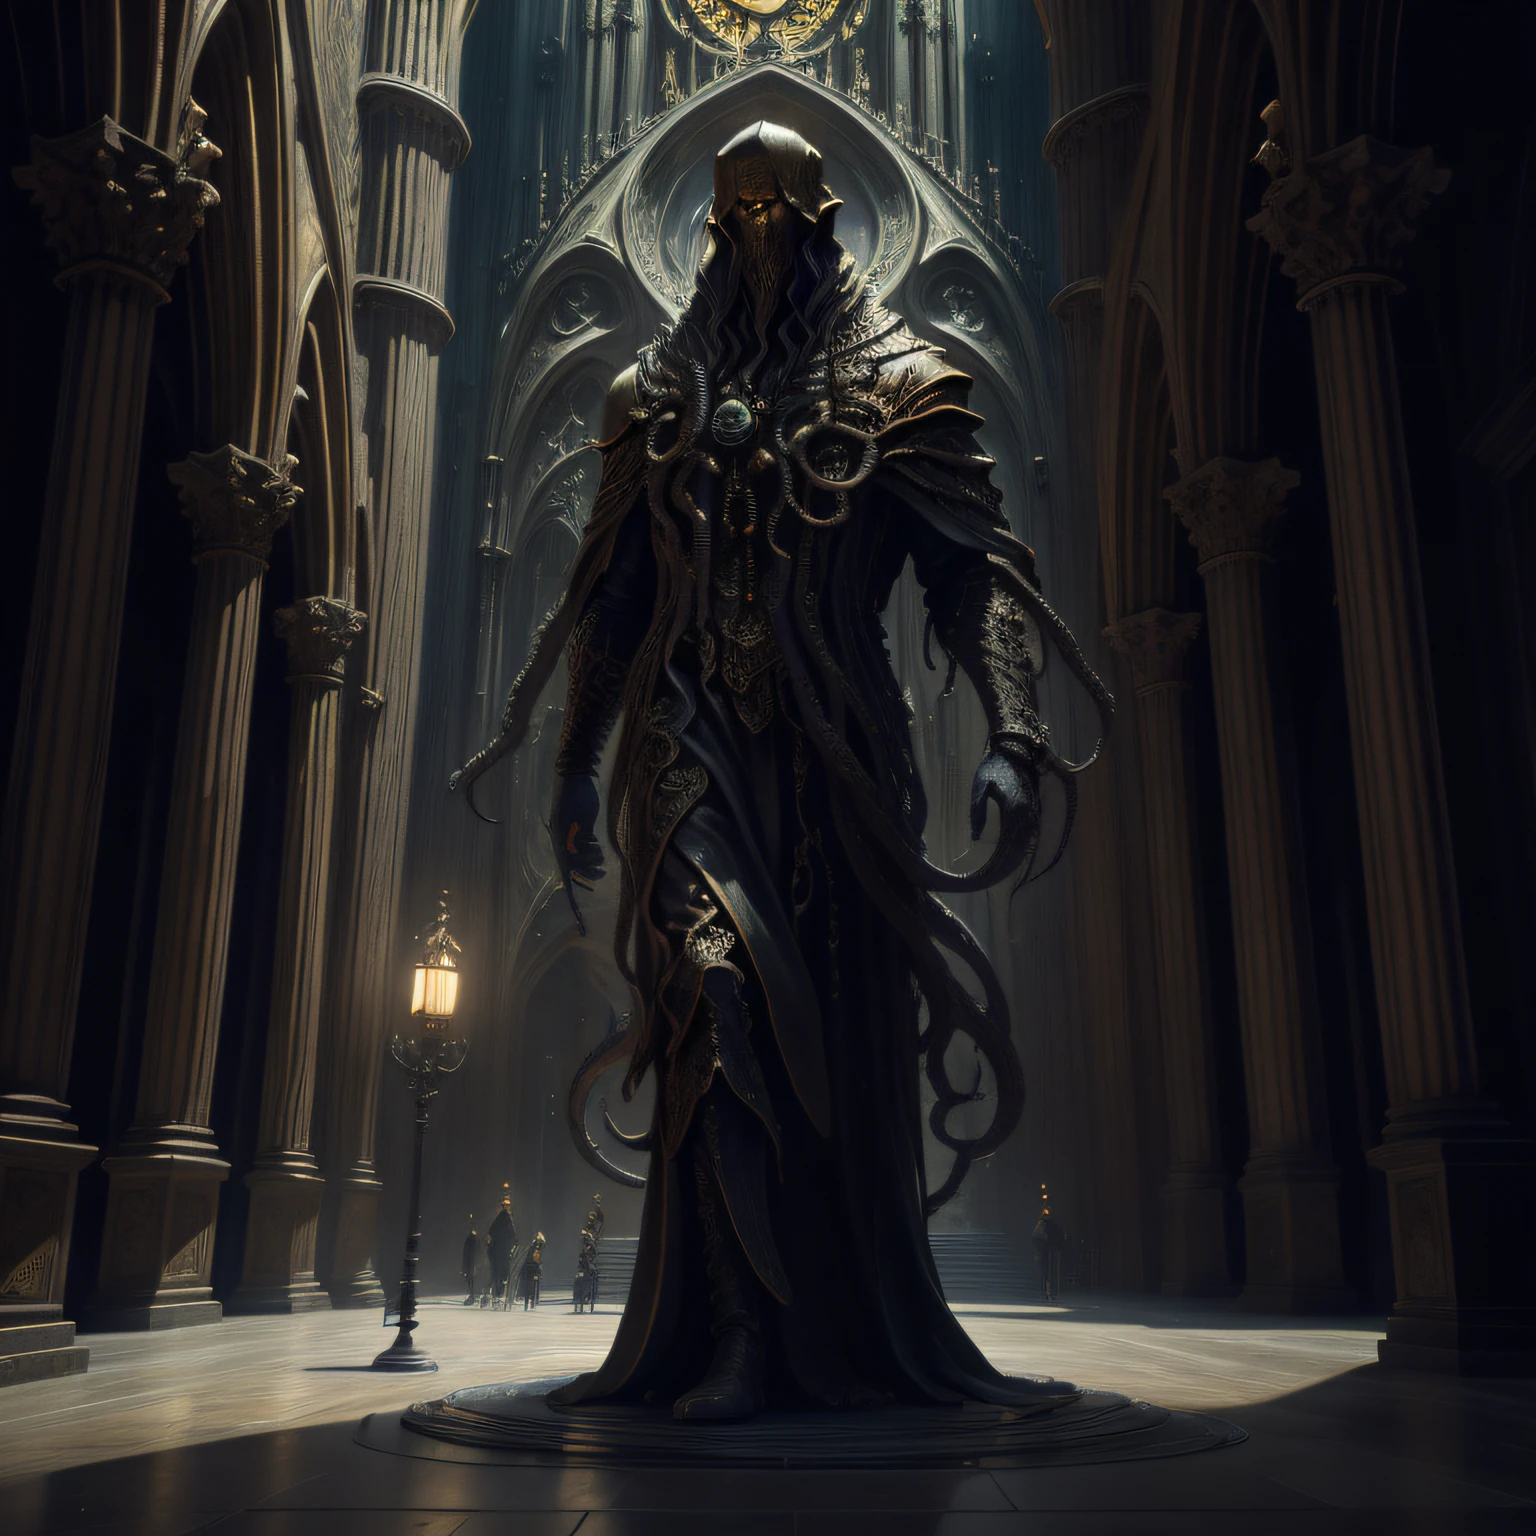 "[Una estatua de Cthulhu] + Horror de Eldrich + De pie en una sala de edificios similar a una catedral + Estilo arquitectónico gótico + intrincados acentos en negro y dorado, 8K masterpiece, Fotorrealista."